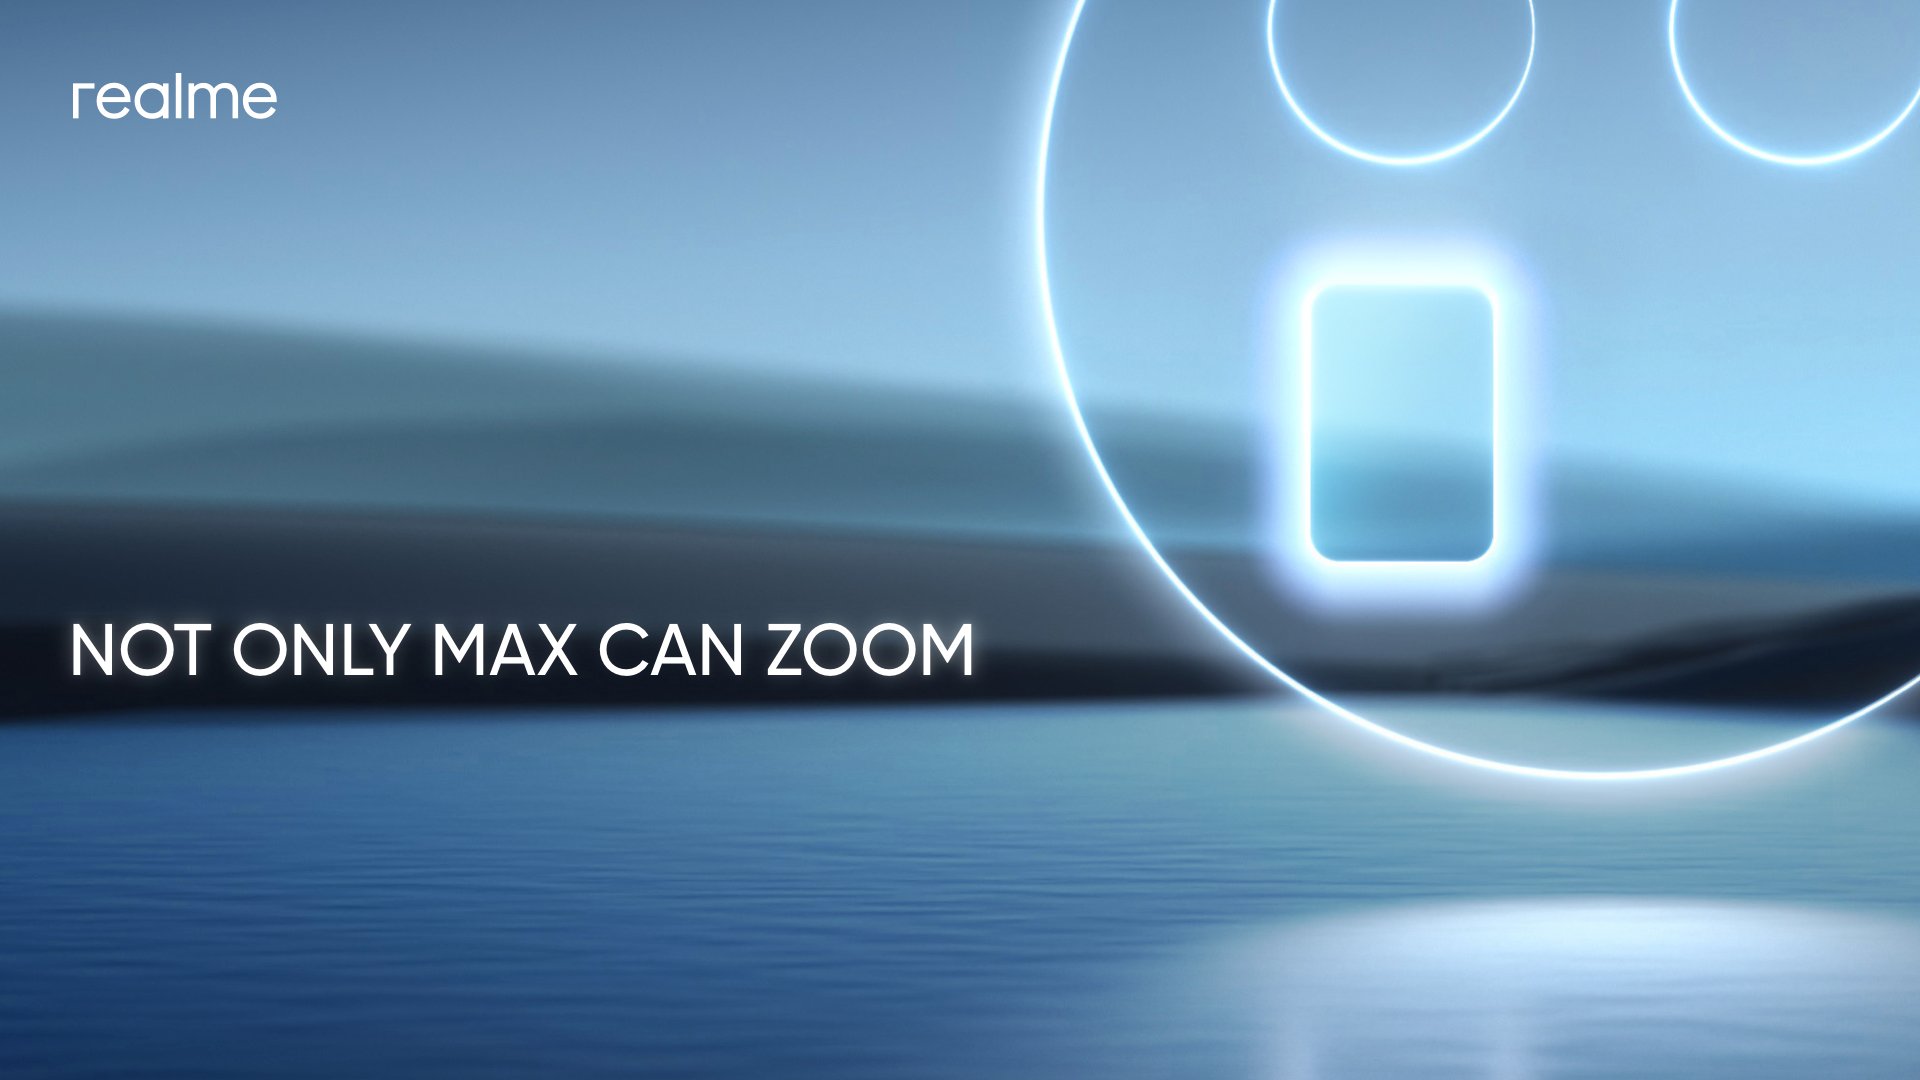 Opvolger van realme X3 SuperZoom? realme bereidt zich voor op een smartphone met periscoopcamera